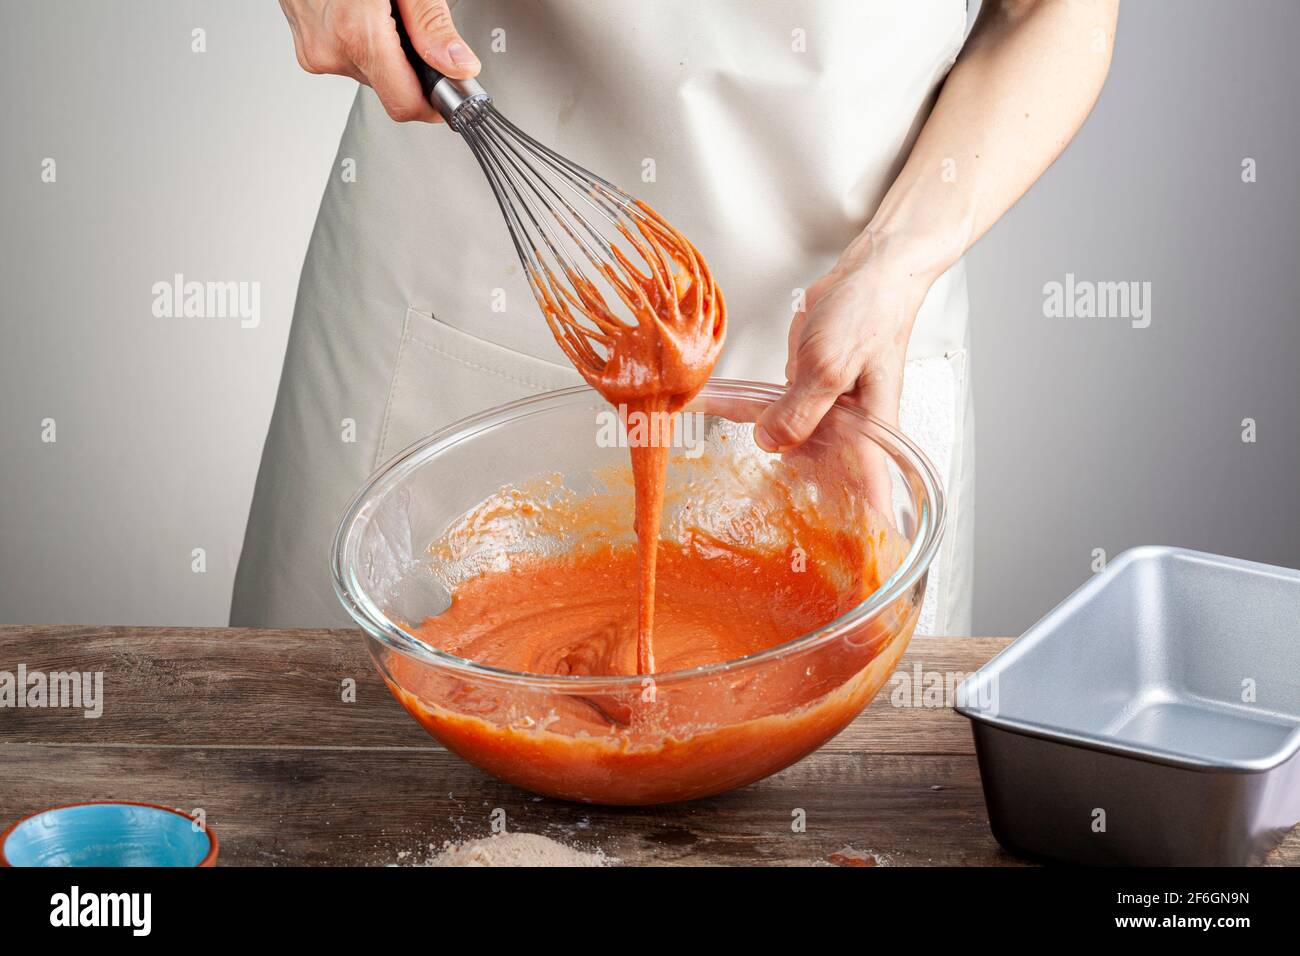 Eine Frau mischt einen blutroten Orangenkuchen in einer Glasschüssel mit einem Schneebesen im Ballon. Konzept für das Kochen, hausgemachte Rezept, Lebensmittelfarbe, Zusatzstoffe. Stockfoto